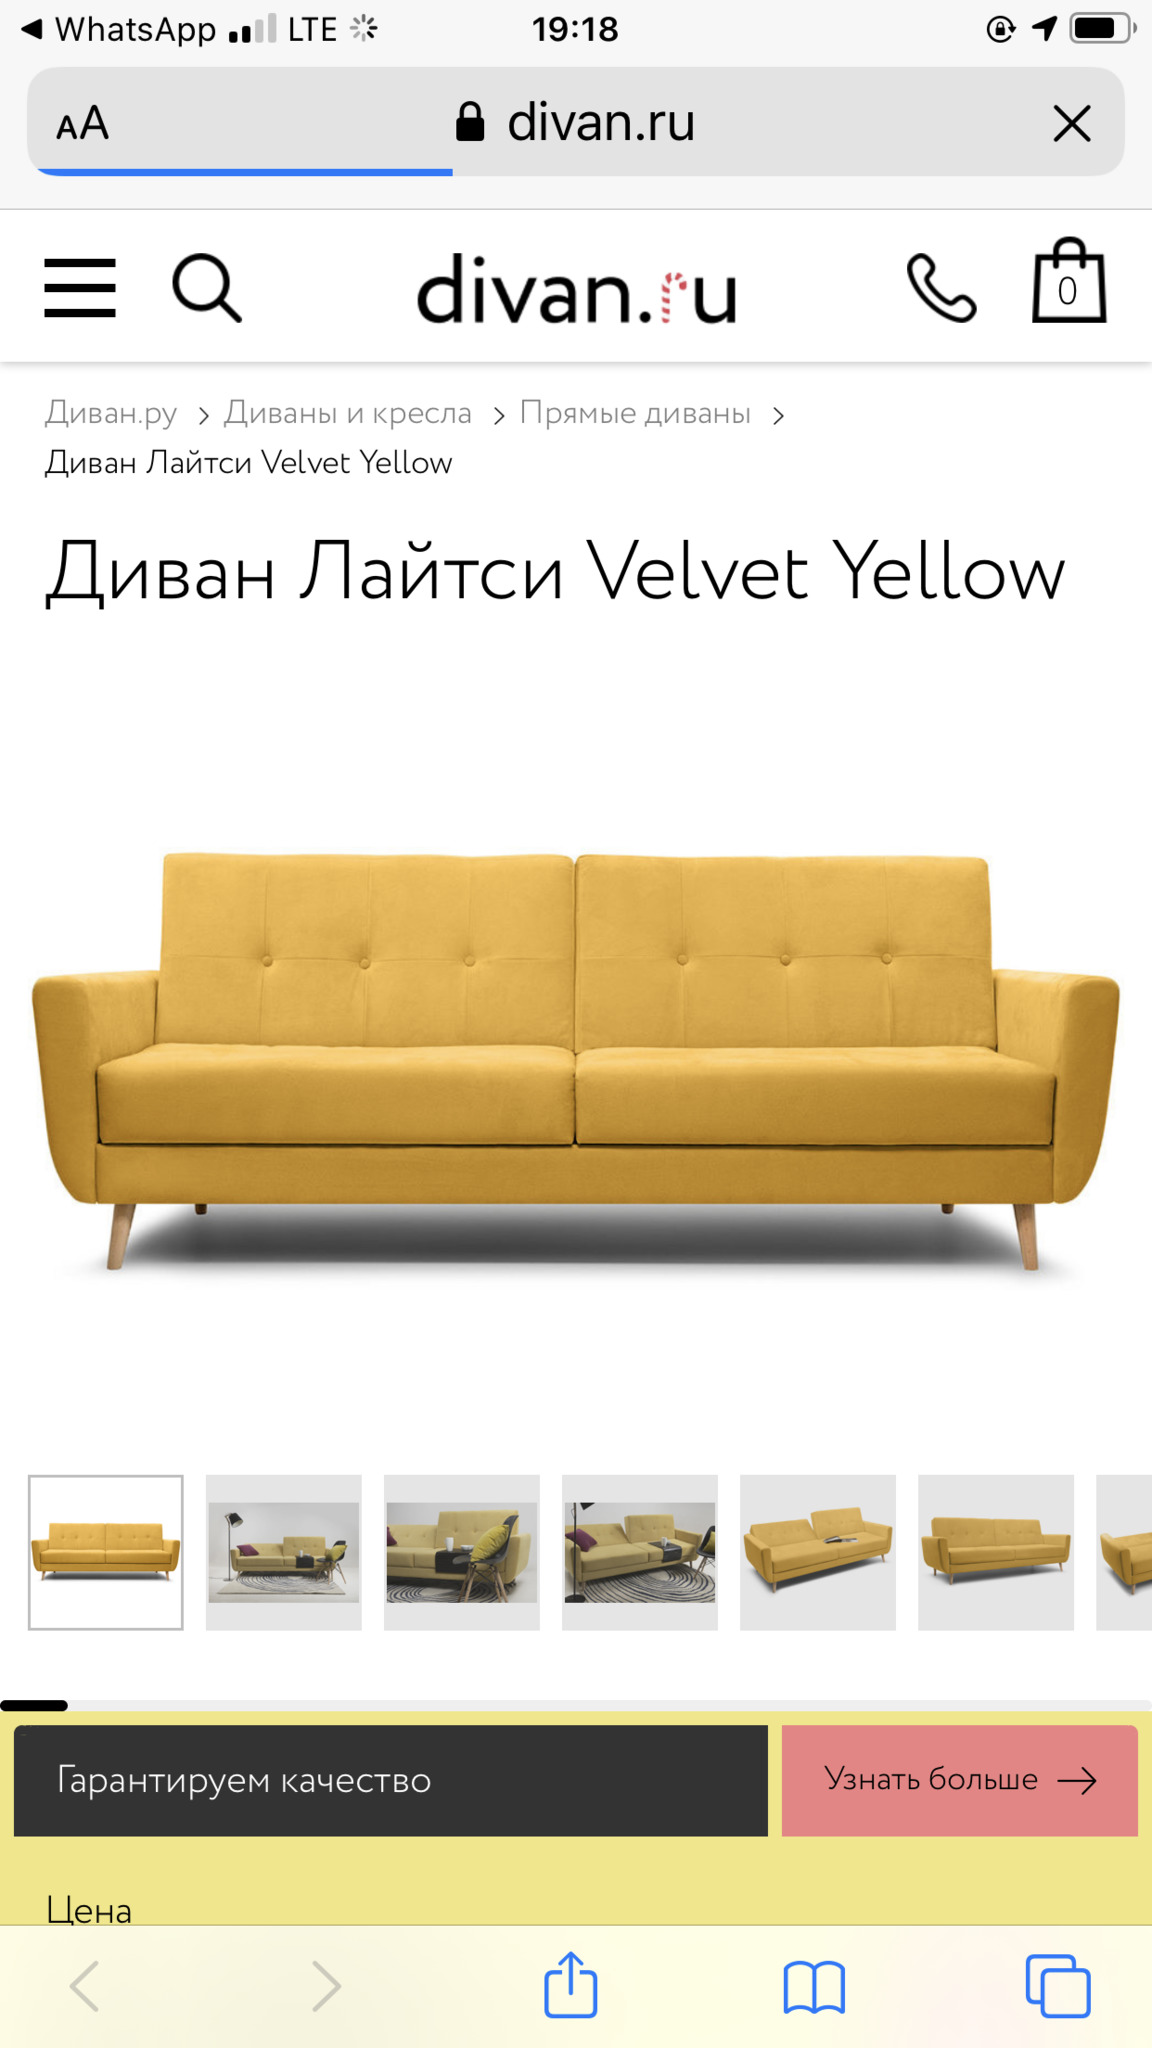 Диван лайтси velvet yellow